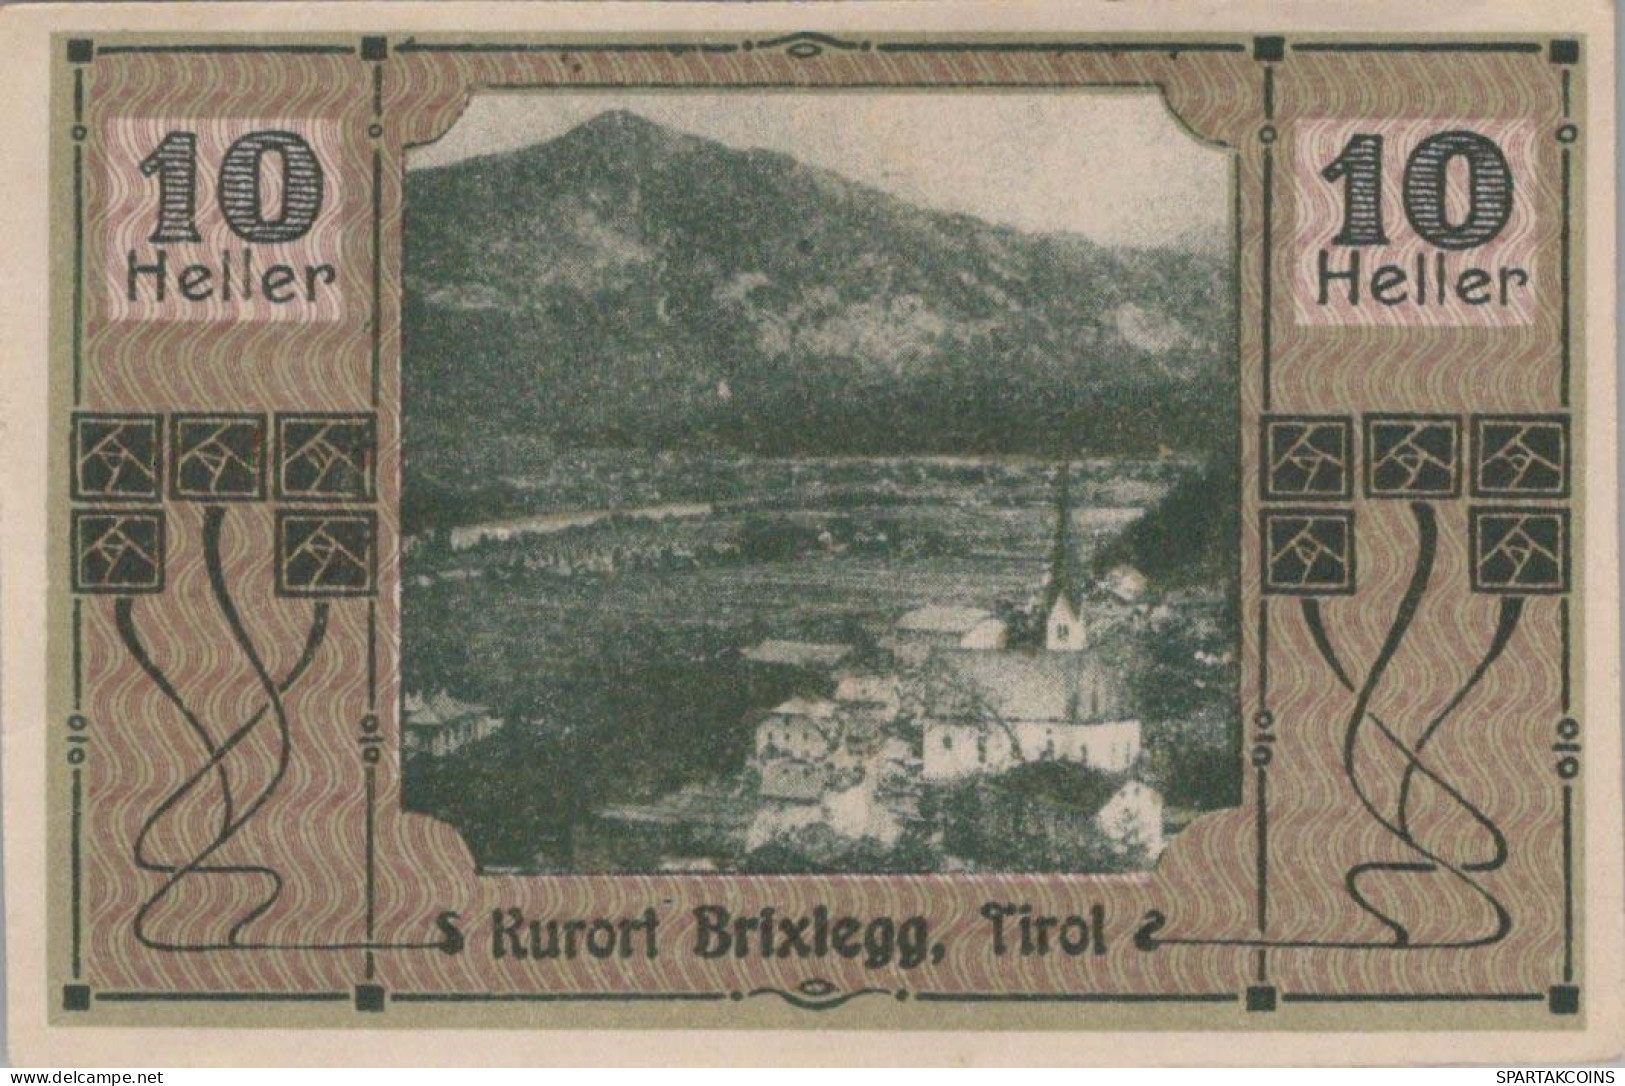 10 HELLER 1920 Stadt BRIXLEGG Tyrol Österreich Notgeld Banknote #PF165 - [11] Local Banknote Issues